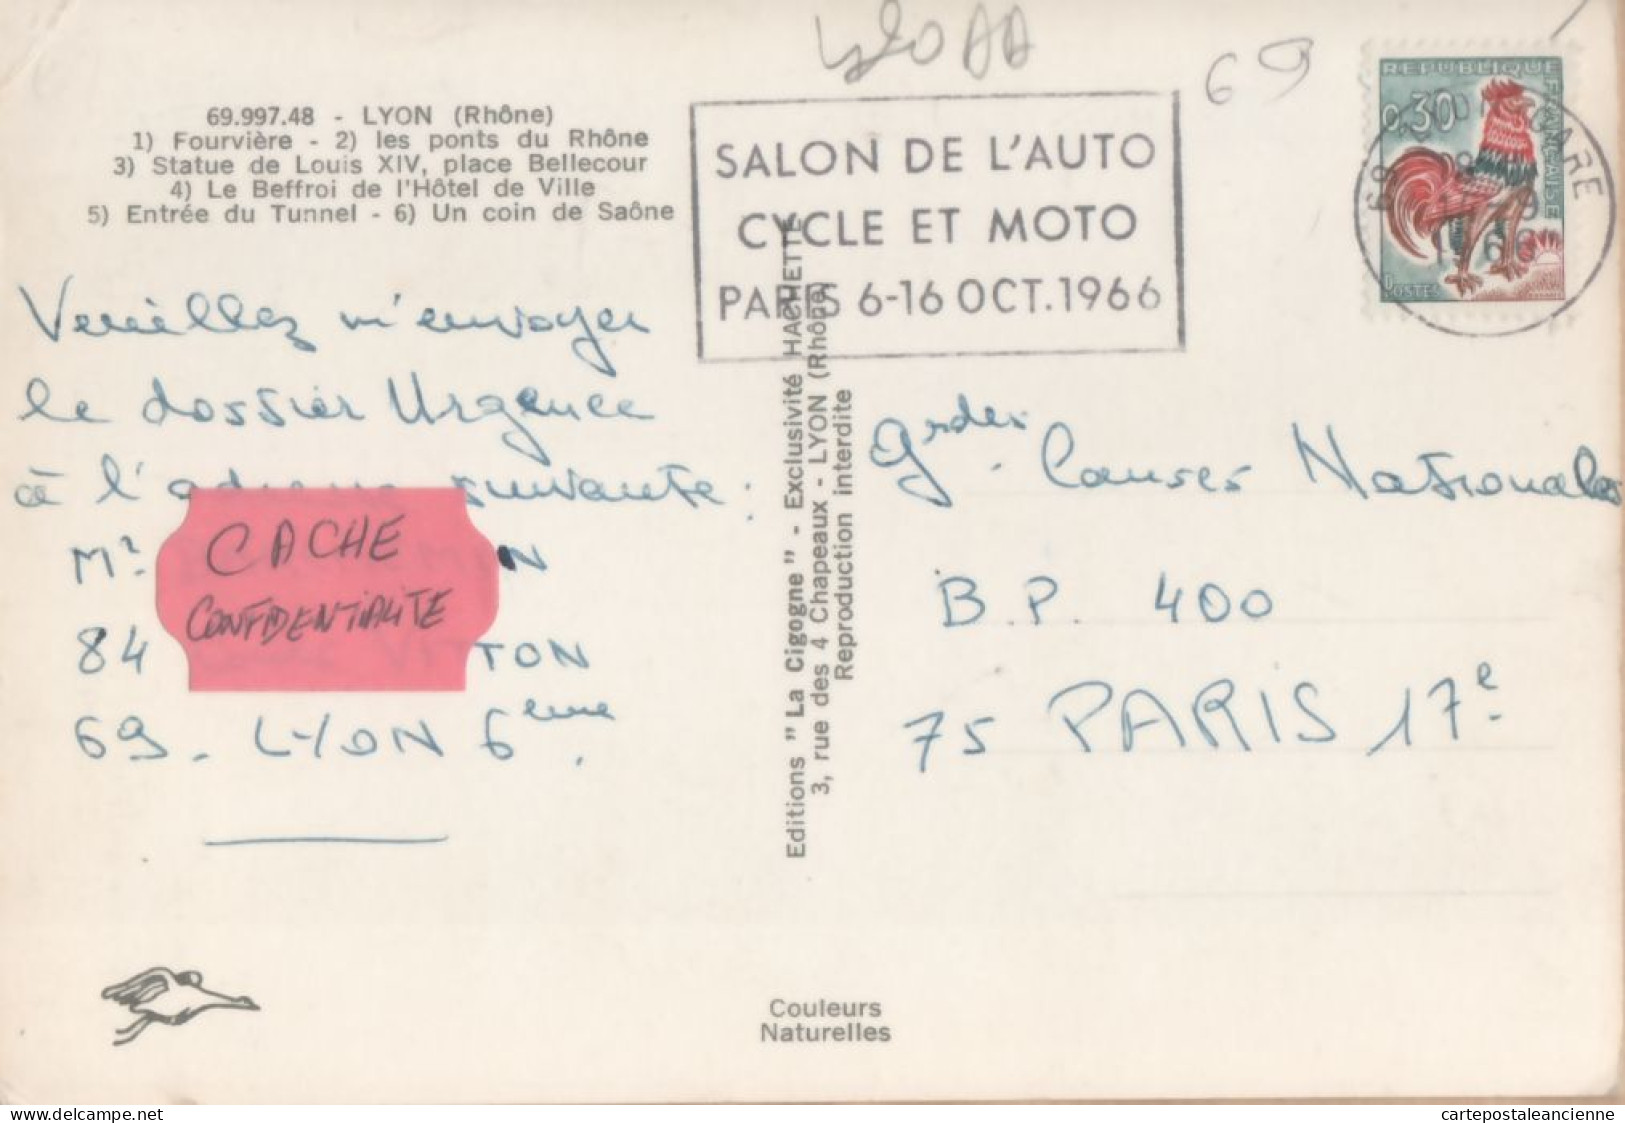 31859 / LYON 69-Rhone Multivues Flamme Poste Salon AUTO-CYCLE-MOTO PARIS Octobre 1966 Editions CIGOGNE 48 - Lyon 1